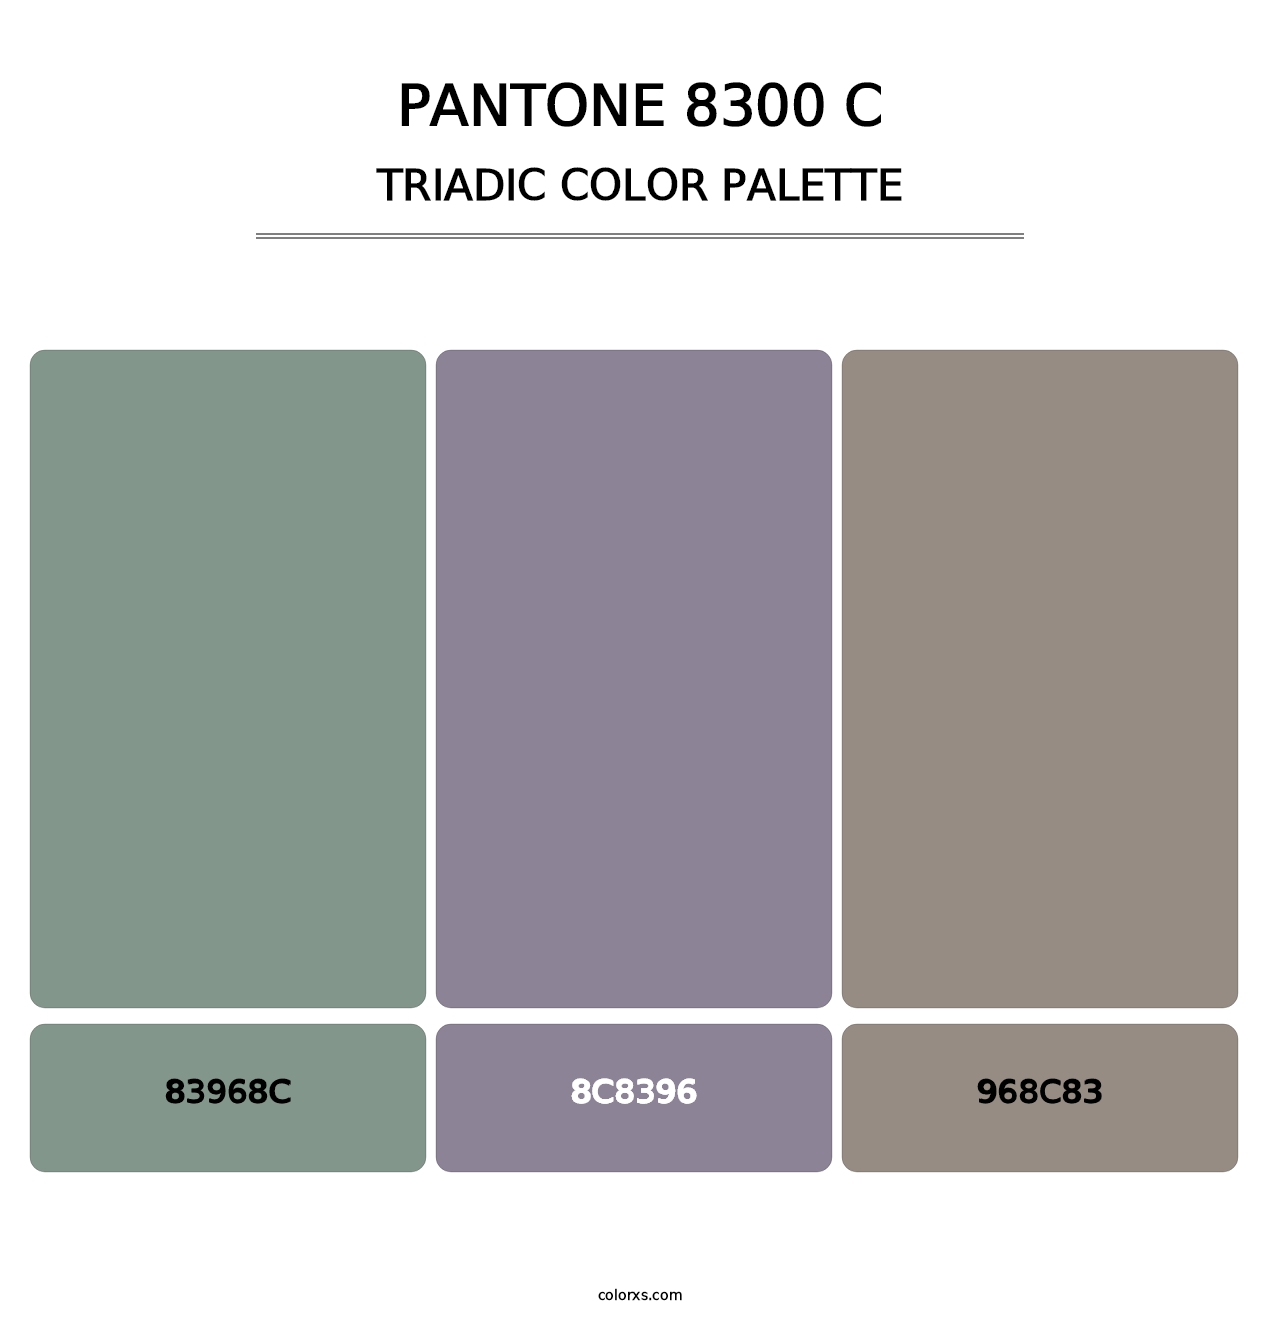 PANTONE 8300 C - Triadic Color Palette